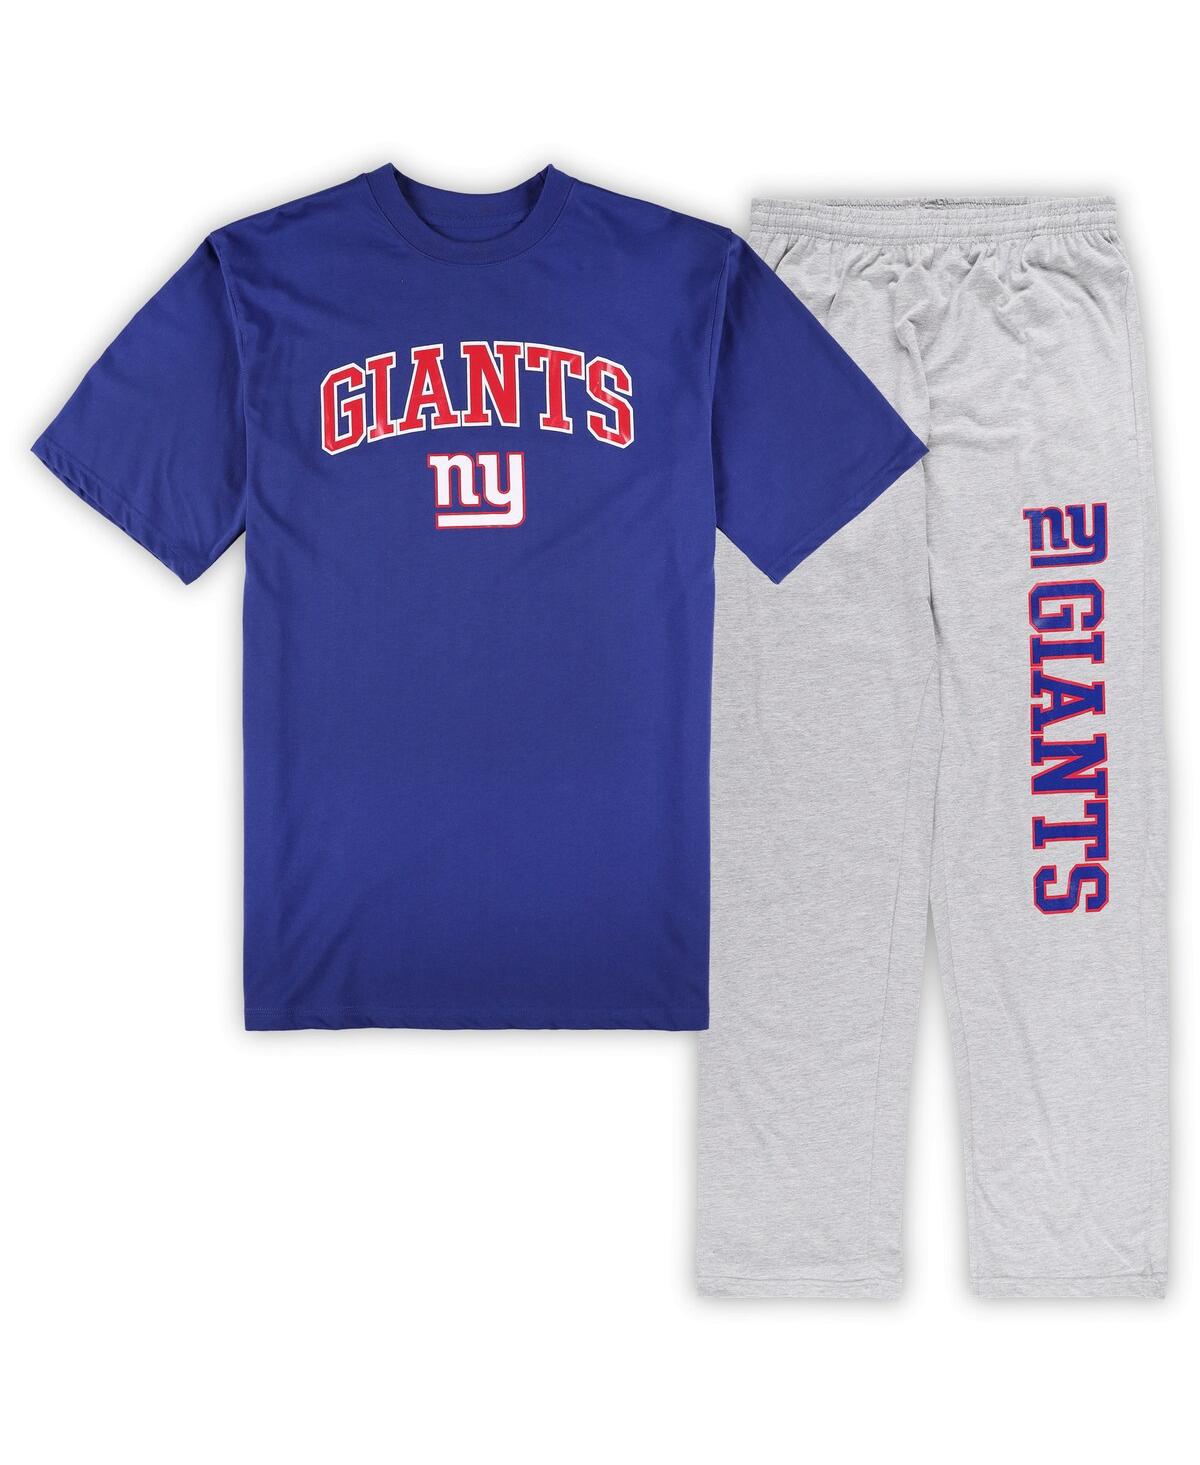 Men's Concepts Sport Royal, Heather Gray New York Giants Big and Tall T-shirt and Pajama Pants Sleep Set - Royal, Heather Gray